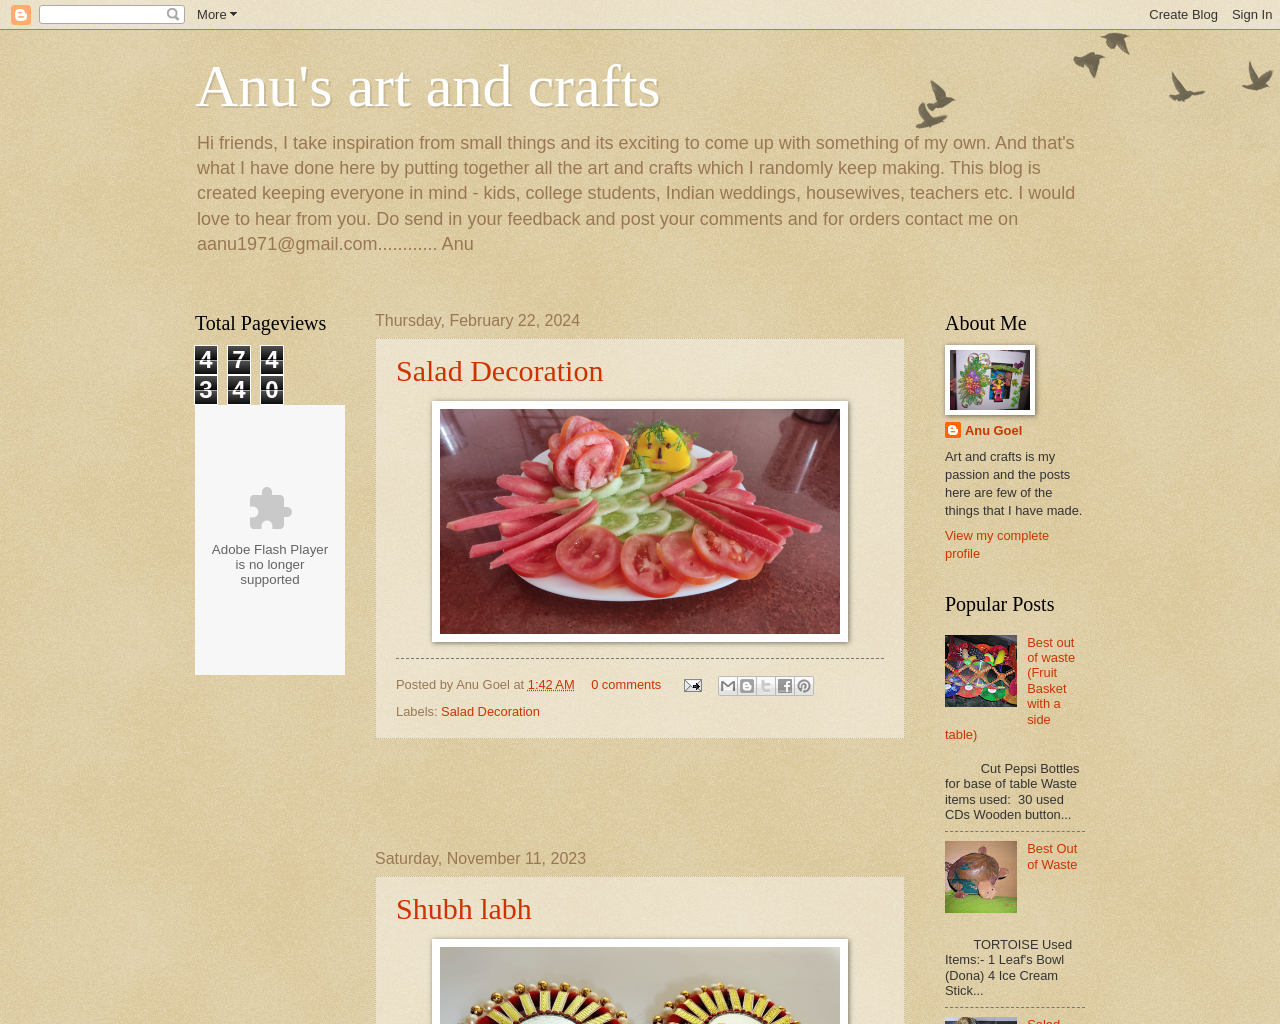 Anu's Art and Craft